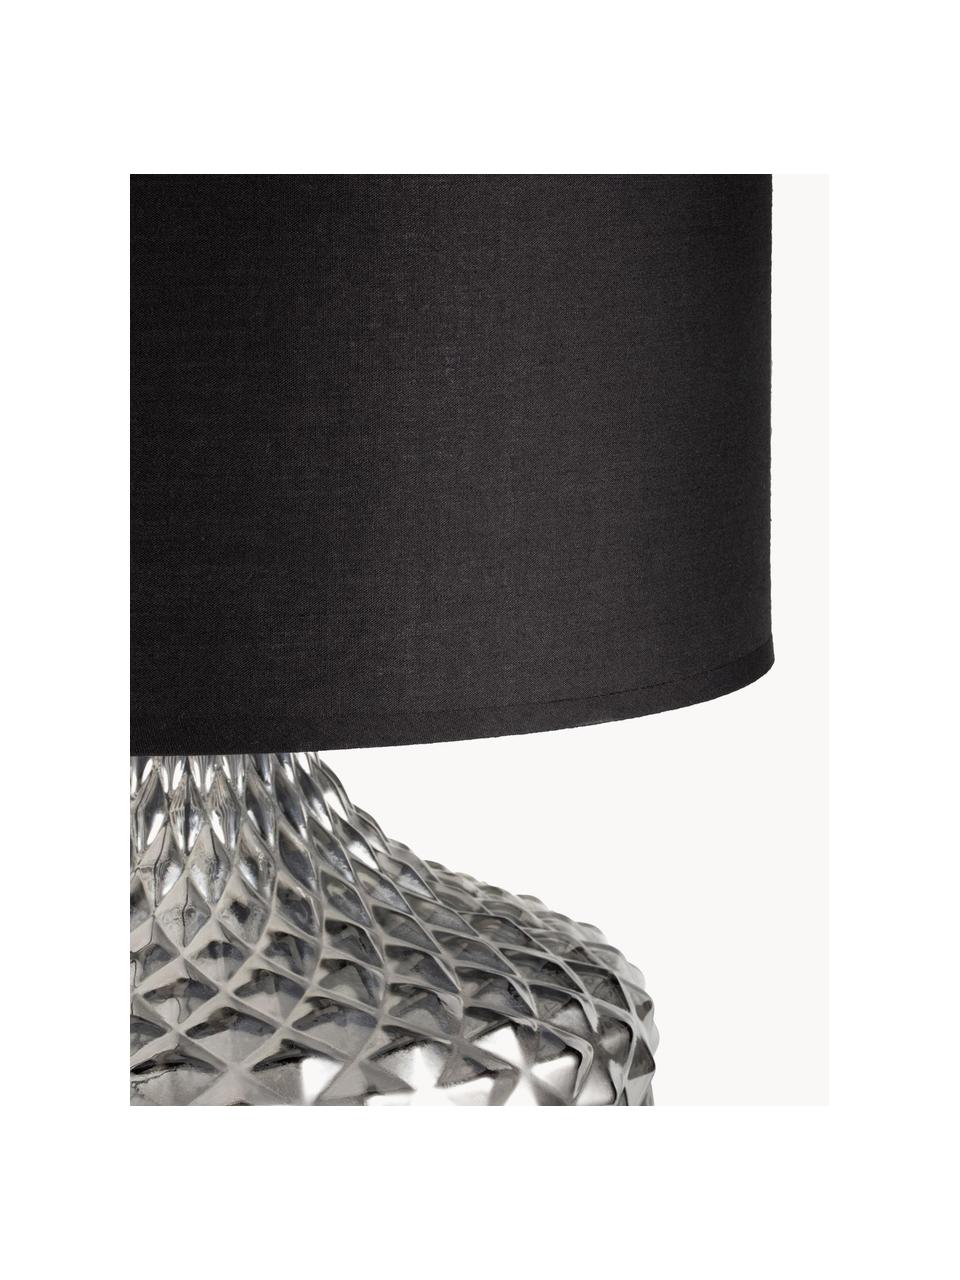 Lámpara de noche grande de vidrio Brilliant Jewel, Pantalla: tela, Cable: cubierto en tela, Gris, negro, Ø 32 x Al 56 cm